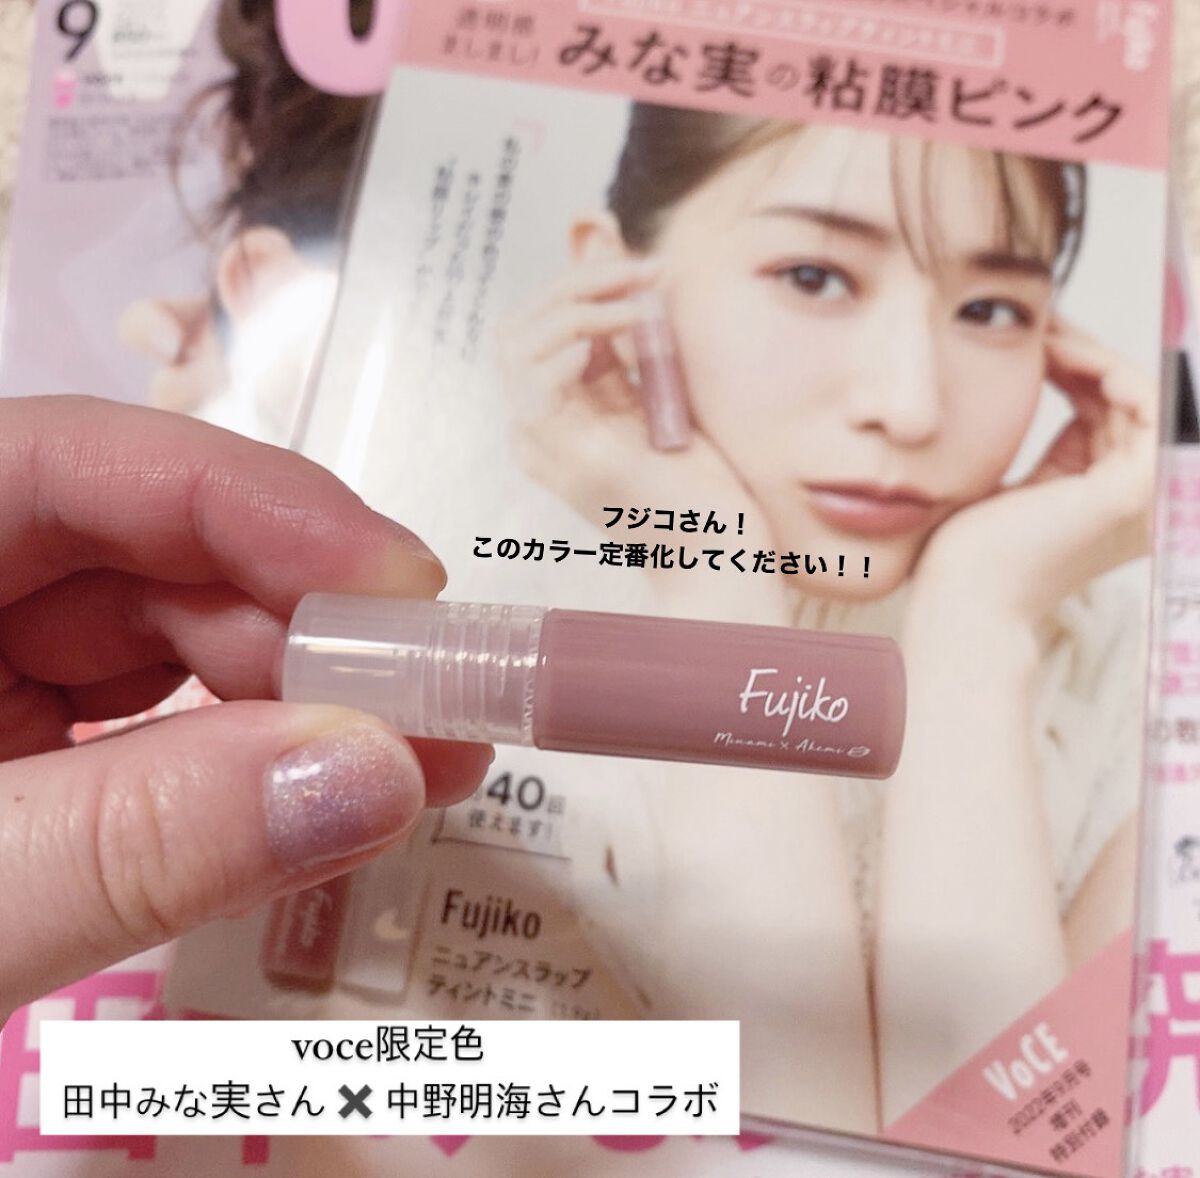 毎週更新 Fujiko フジコ ニュアンスラップティント VOCEカラー 2.8g 粘膜リップ 田中みな実 ピンク ニュアンス 色気 保湿 発色  色持ち